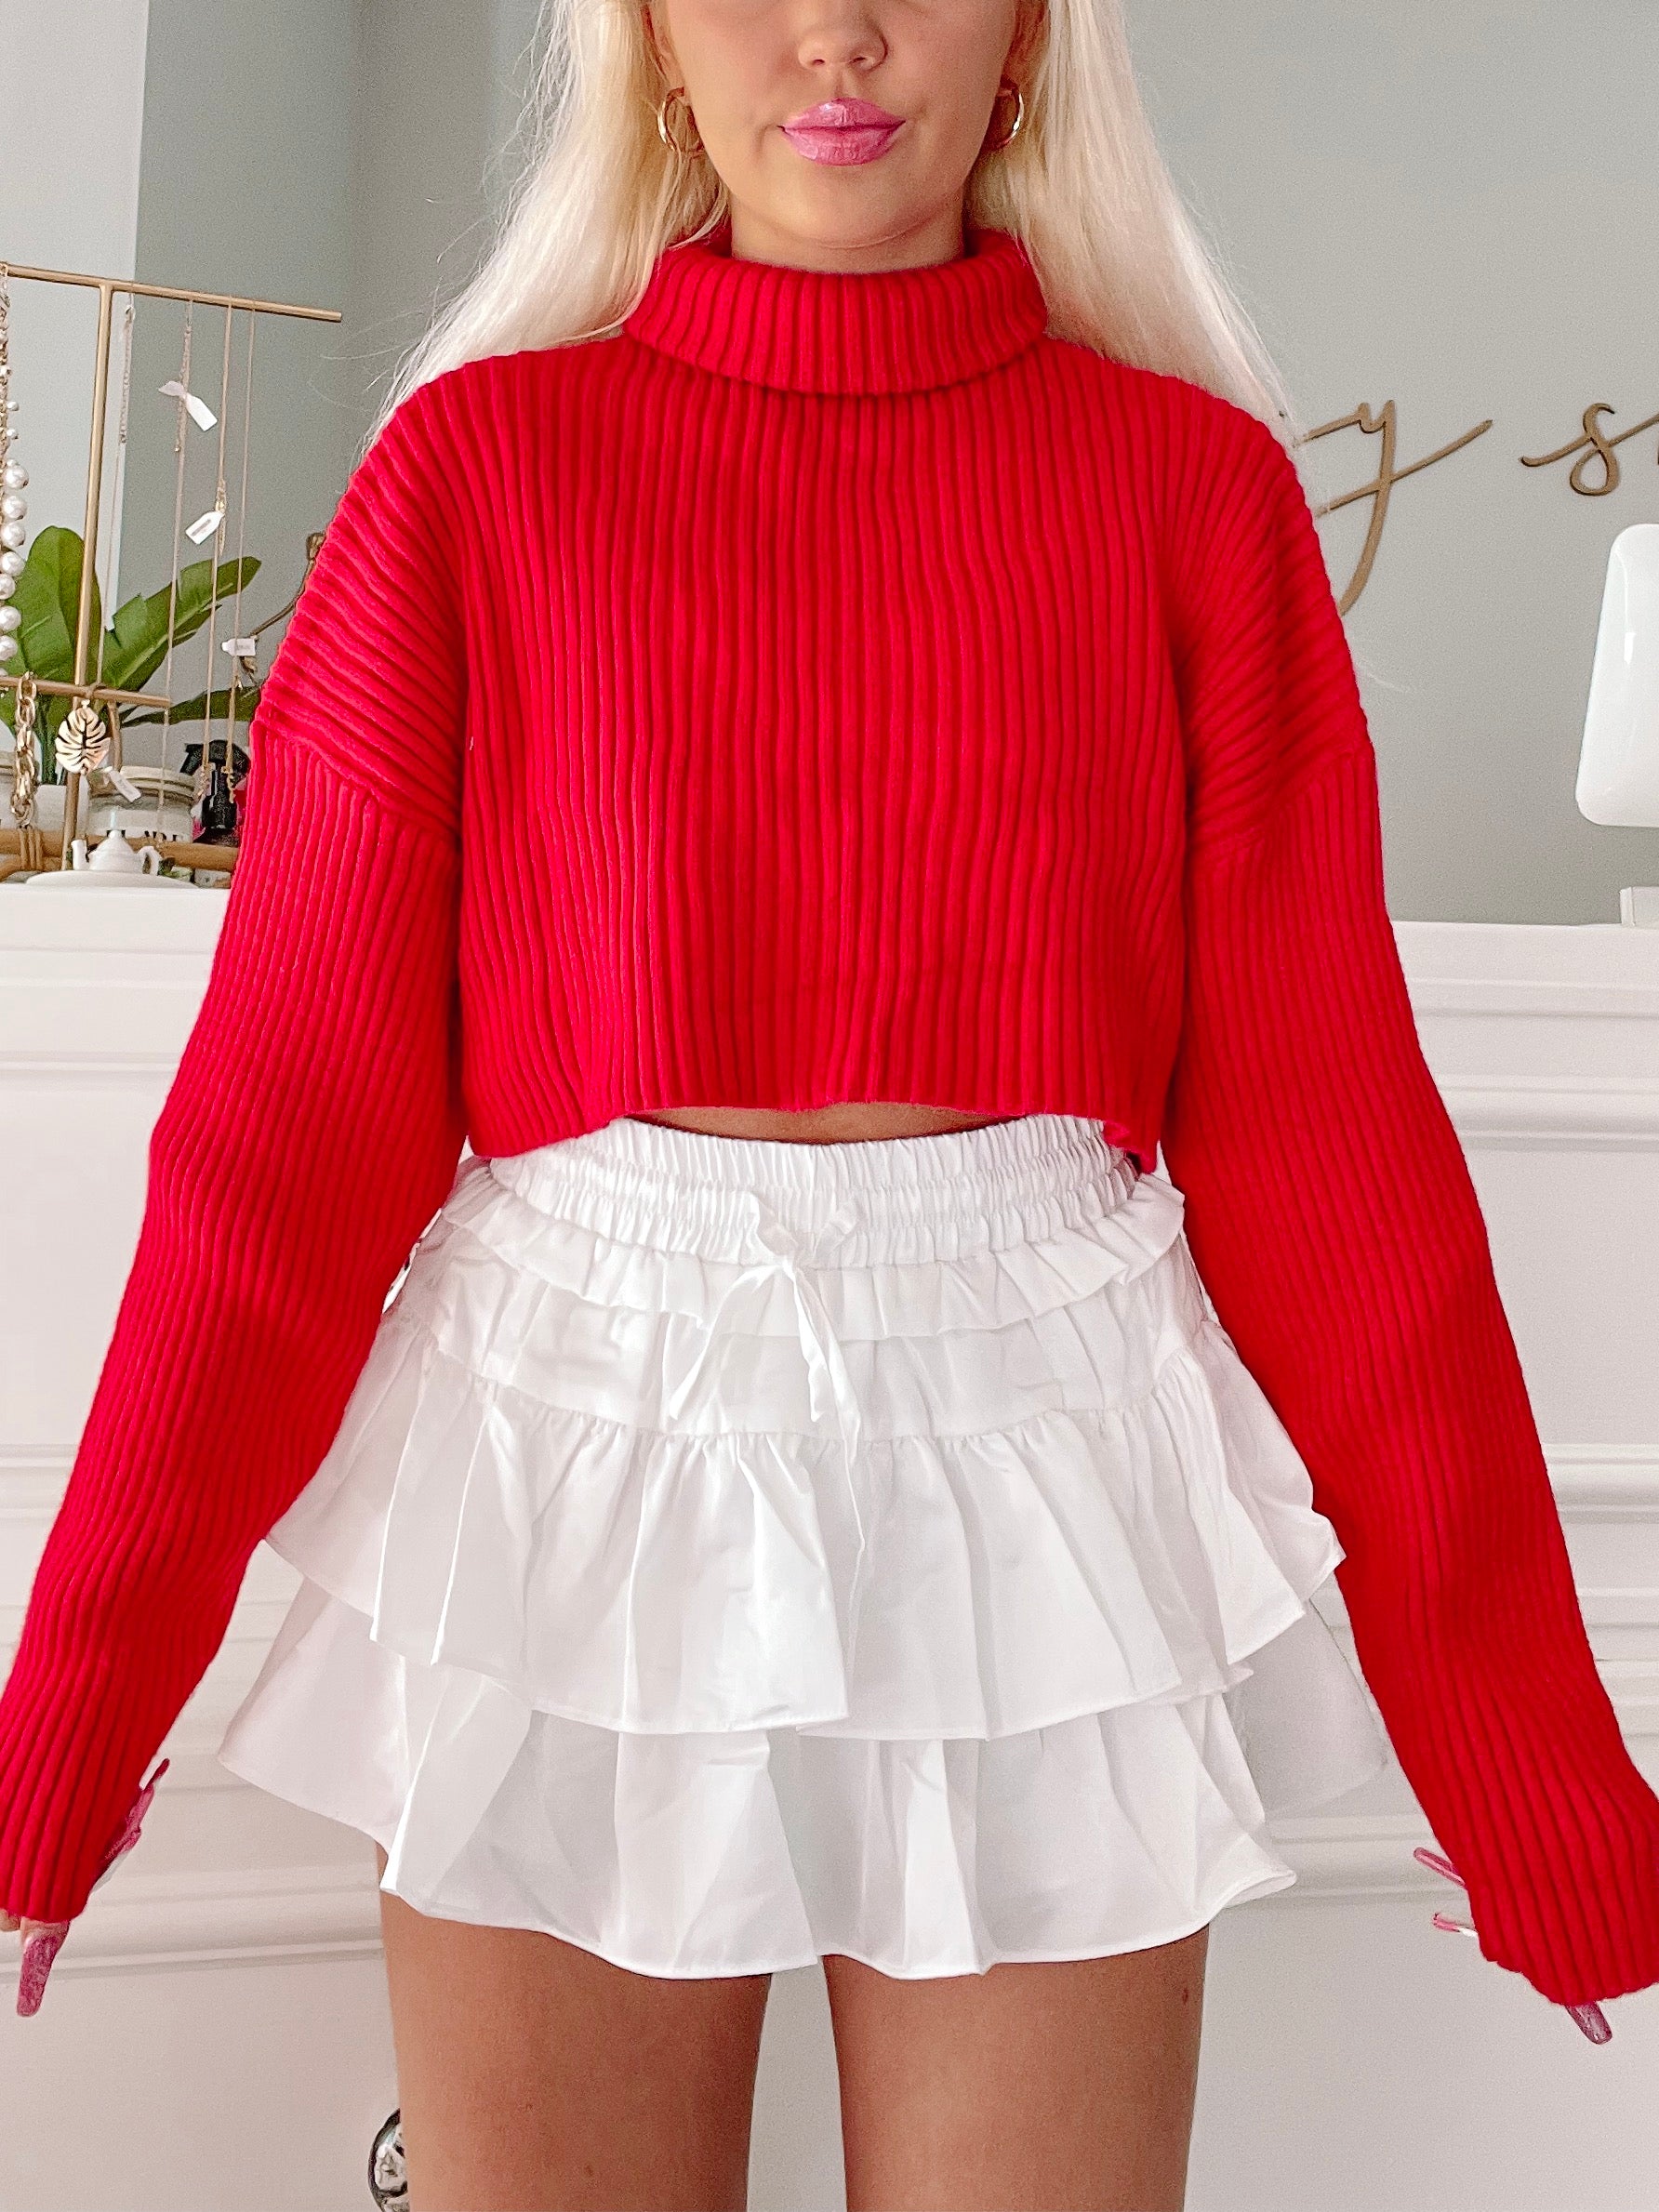 Sydney Cropped Red Turtleneck Sweater | Sassy Shortcake | sassyshortcake.com